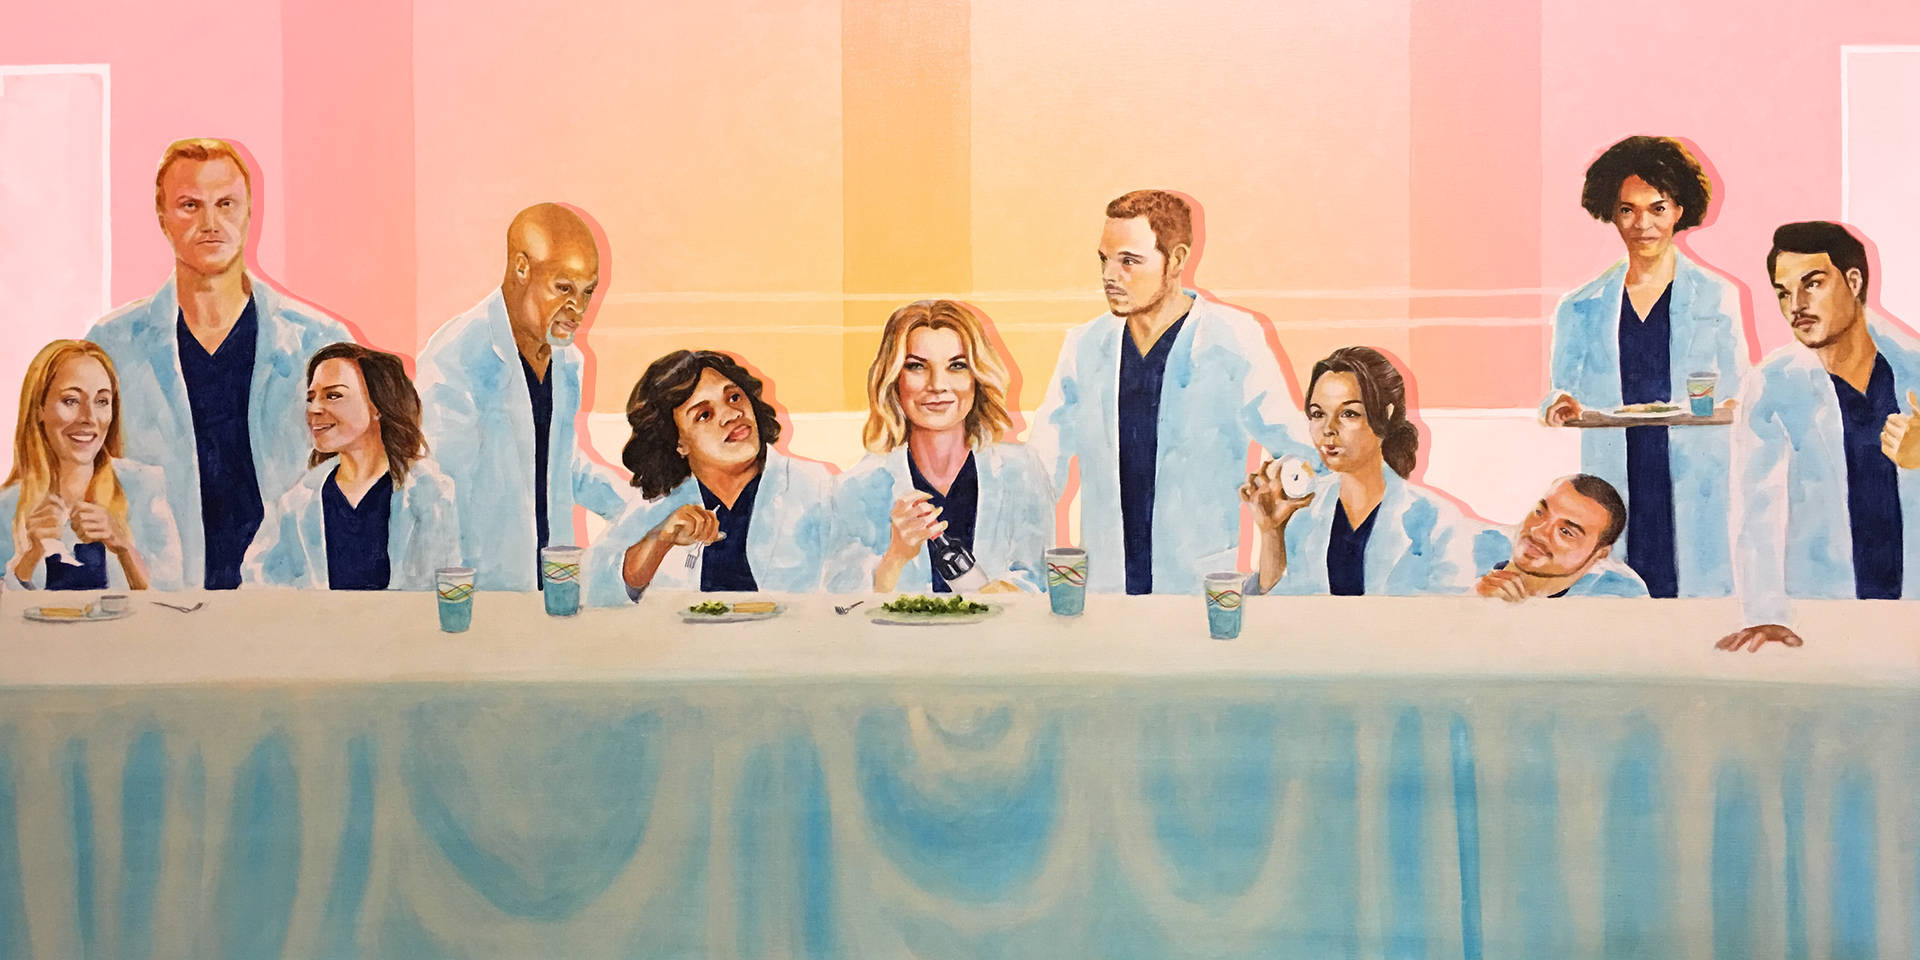 Grey's Anatomy Last Supper Art Background